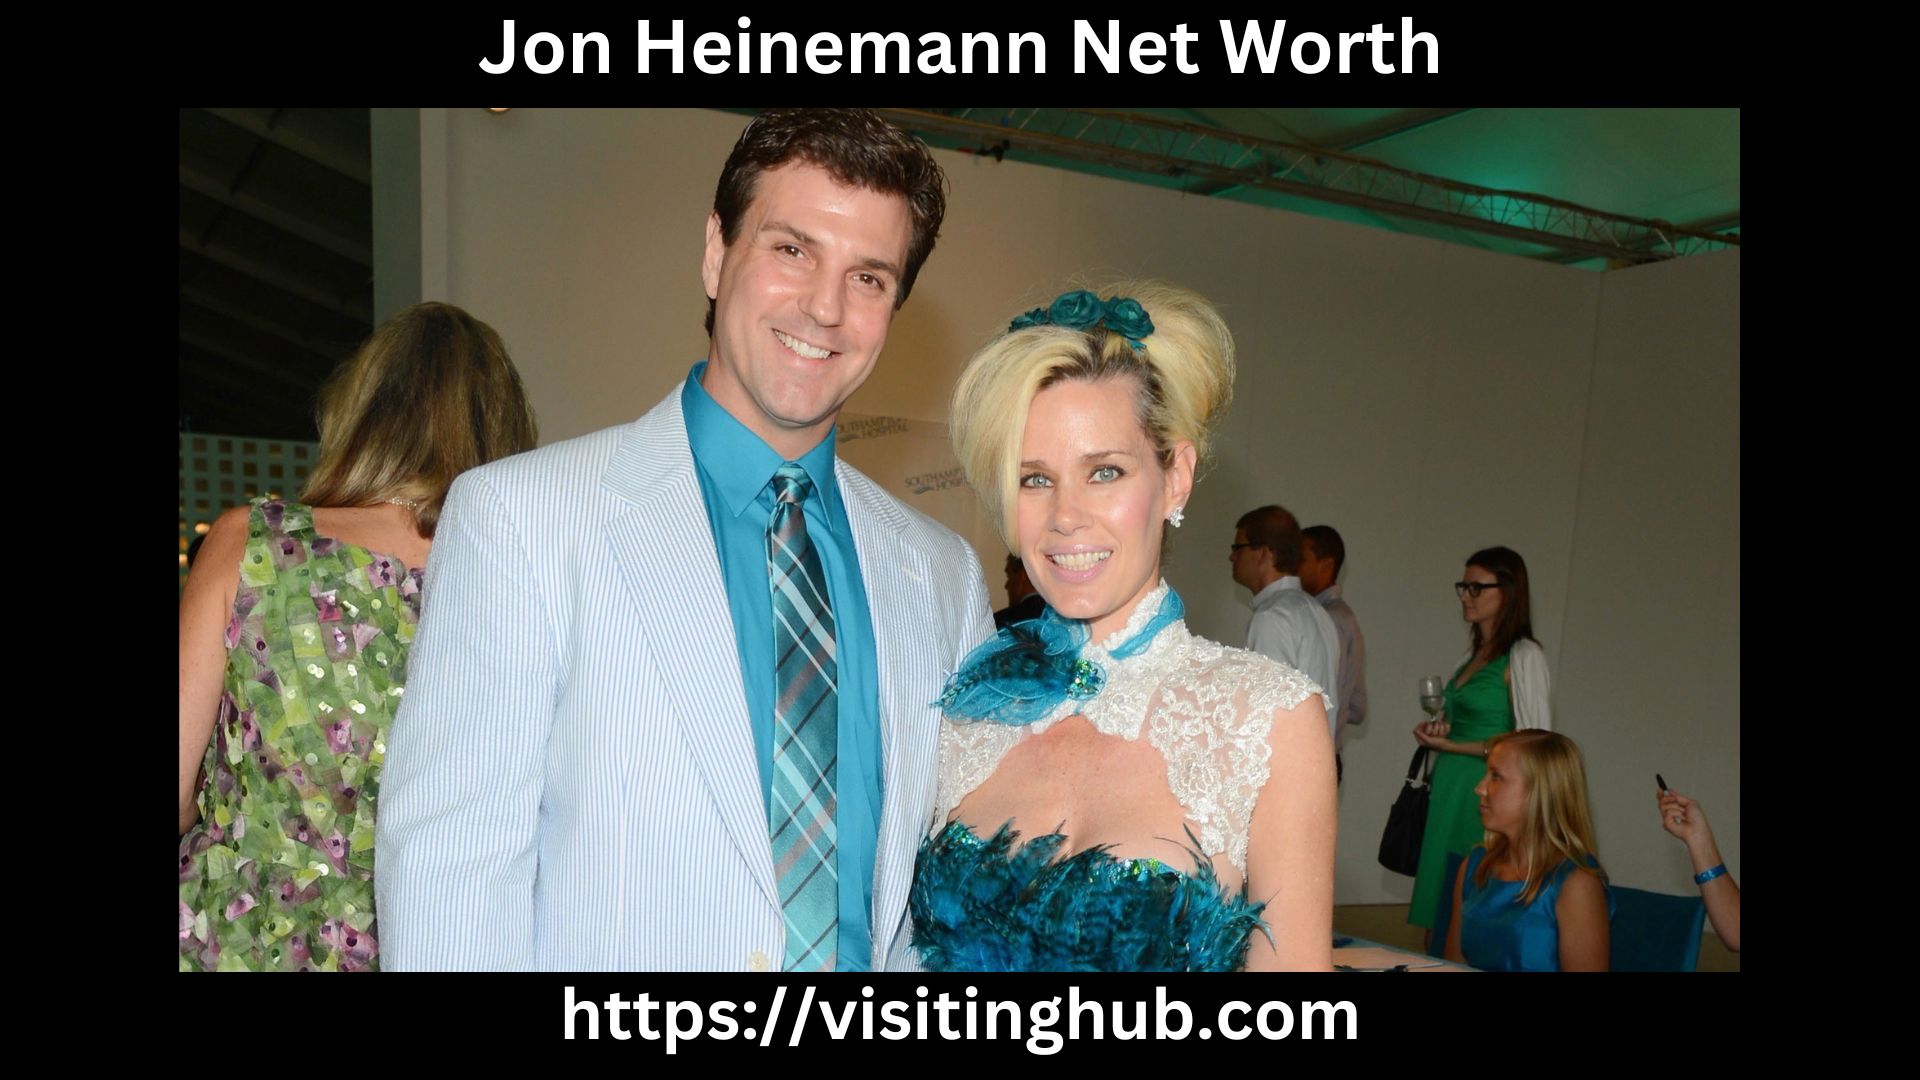 Jon Heinemann Net Worth